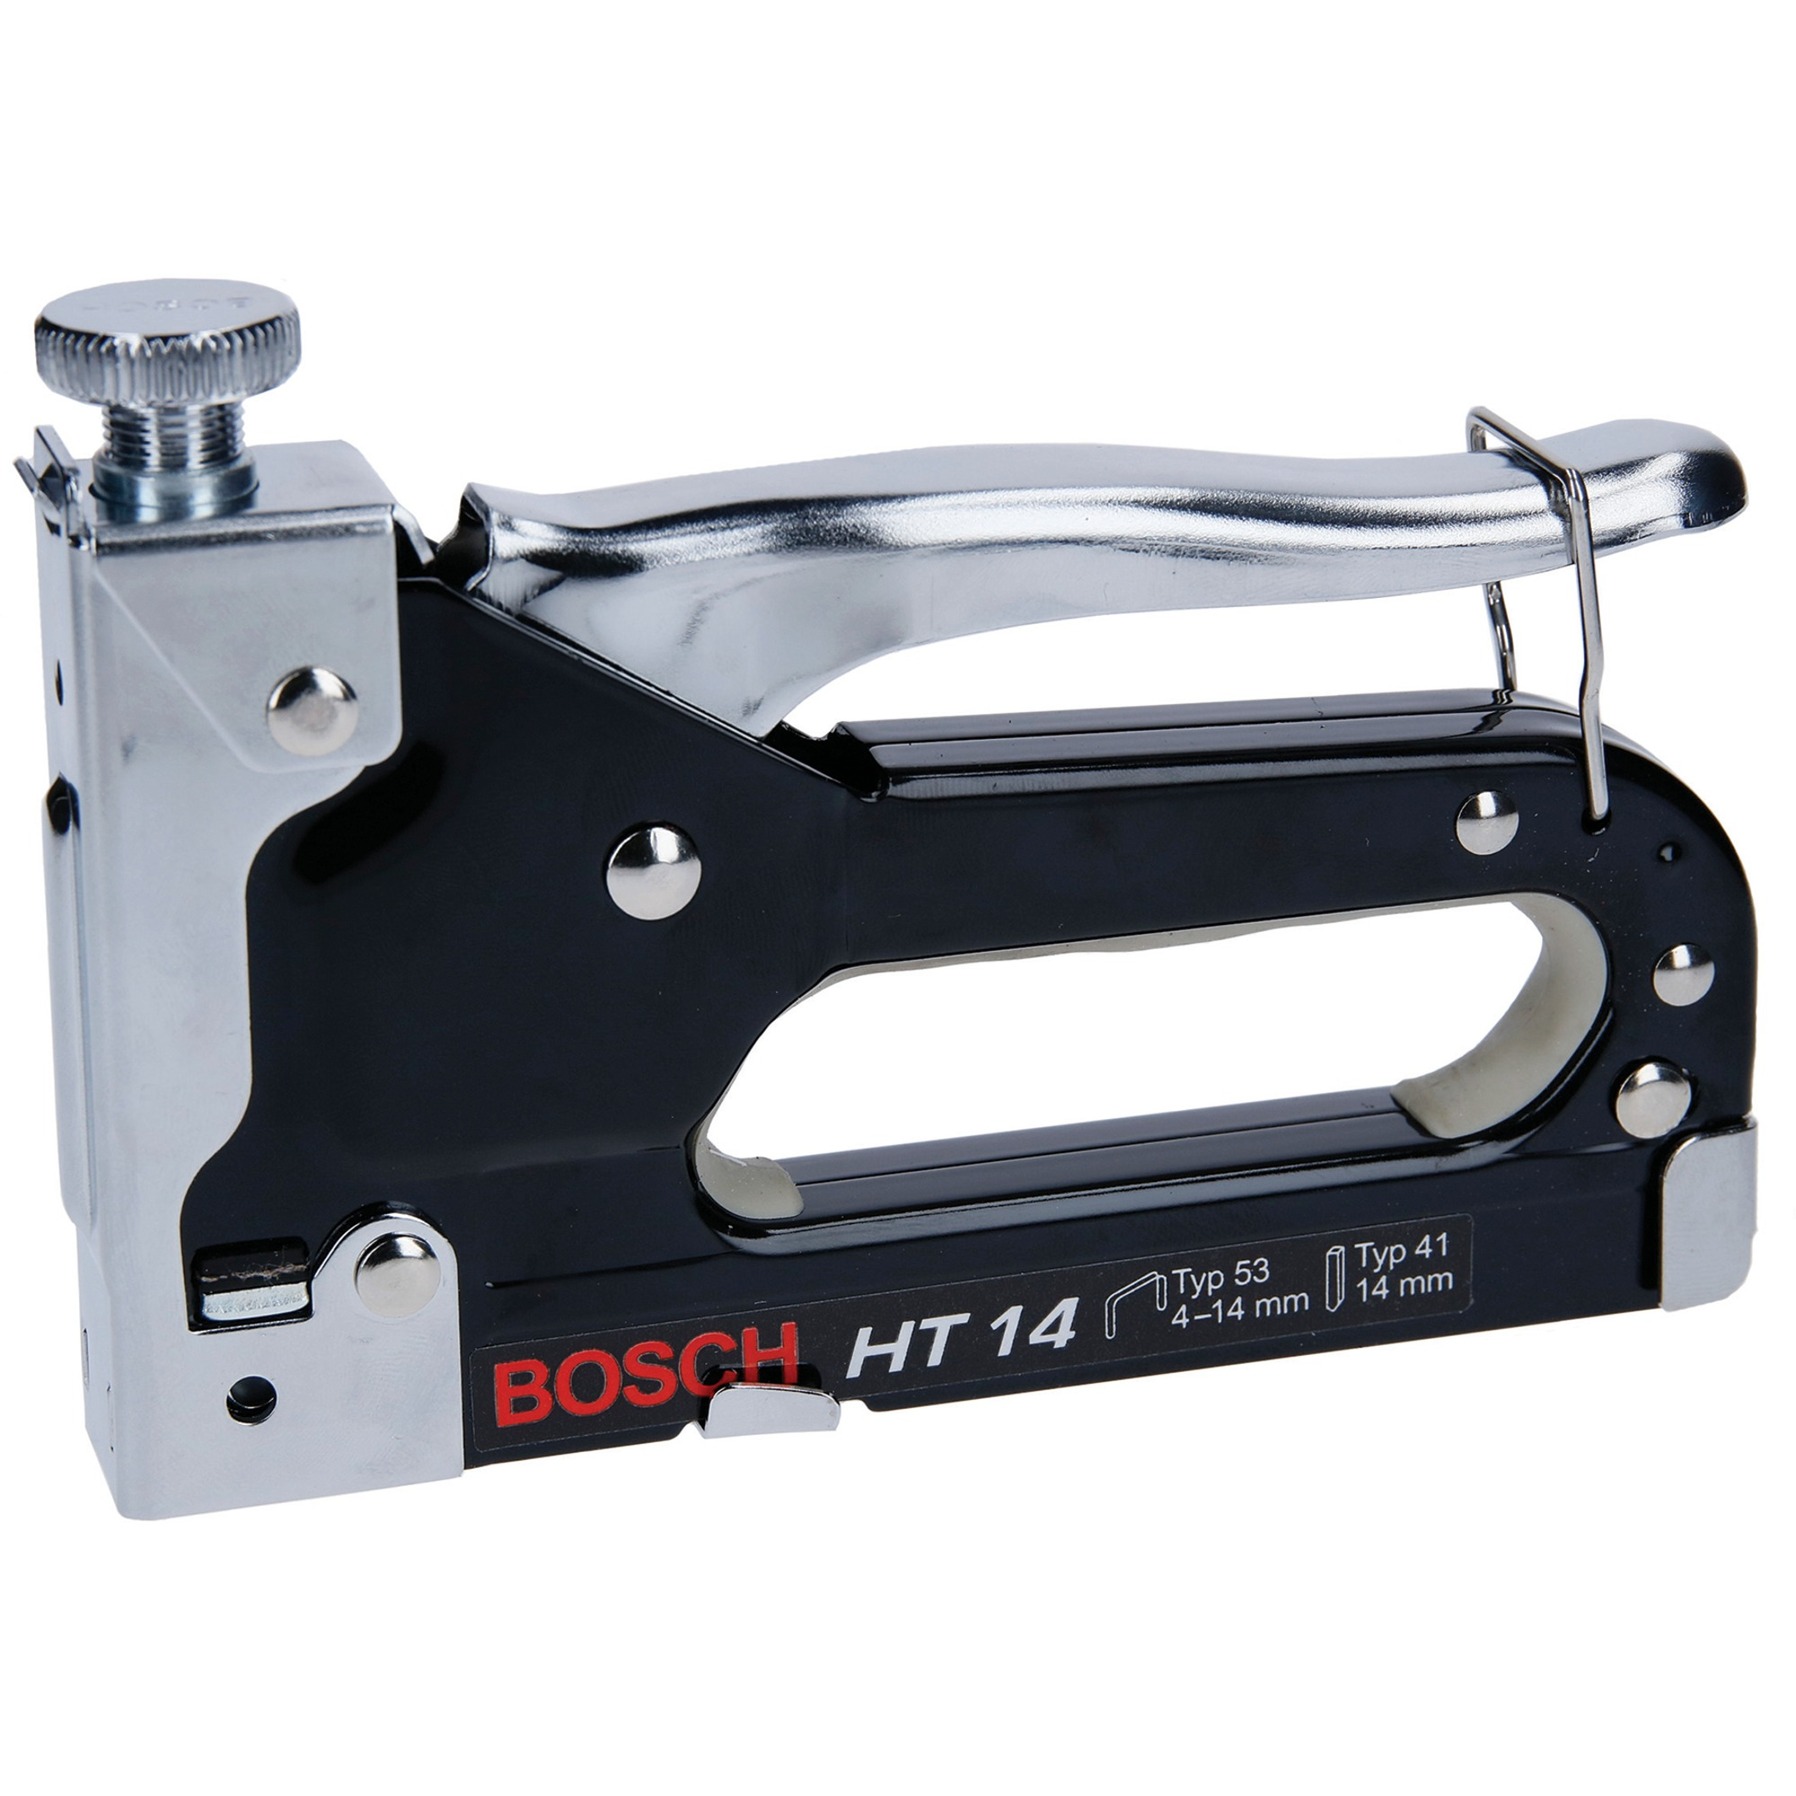 Handtacker HT 14 von Bosch